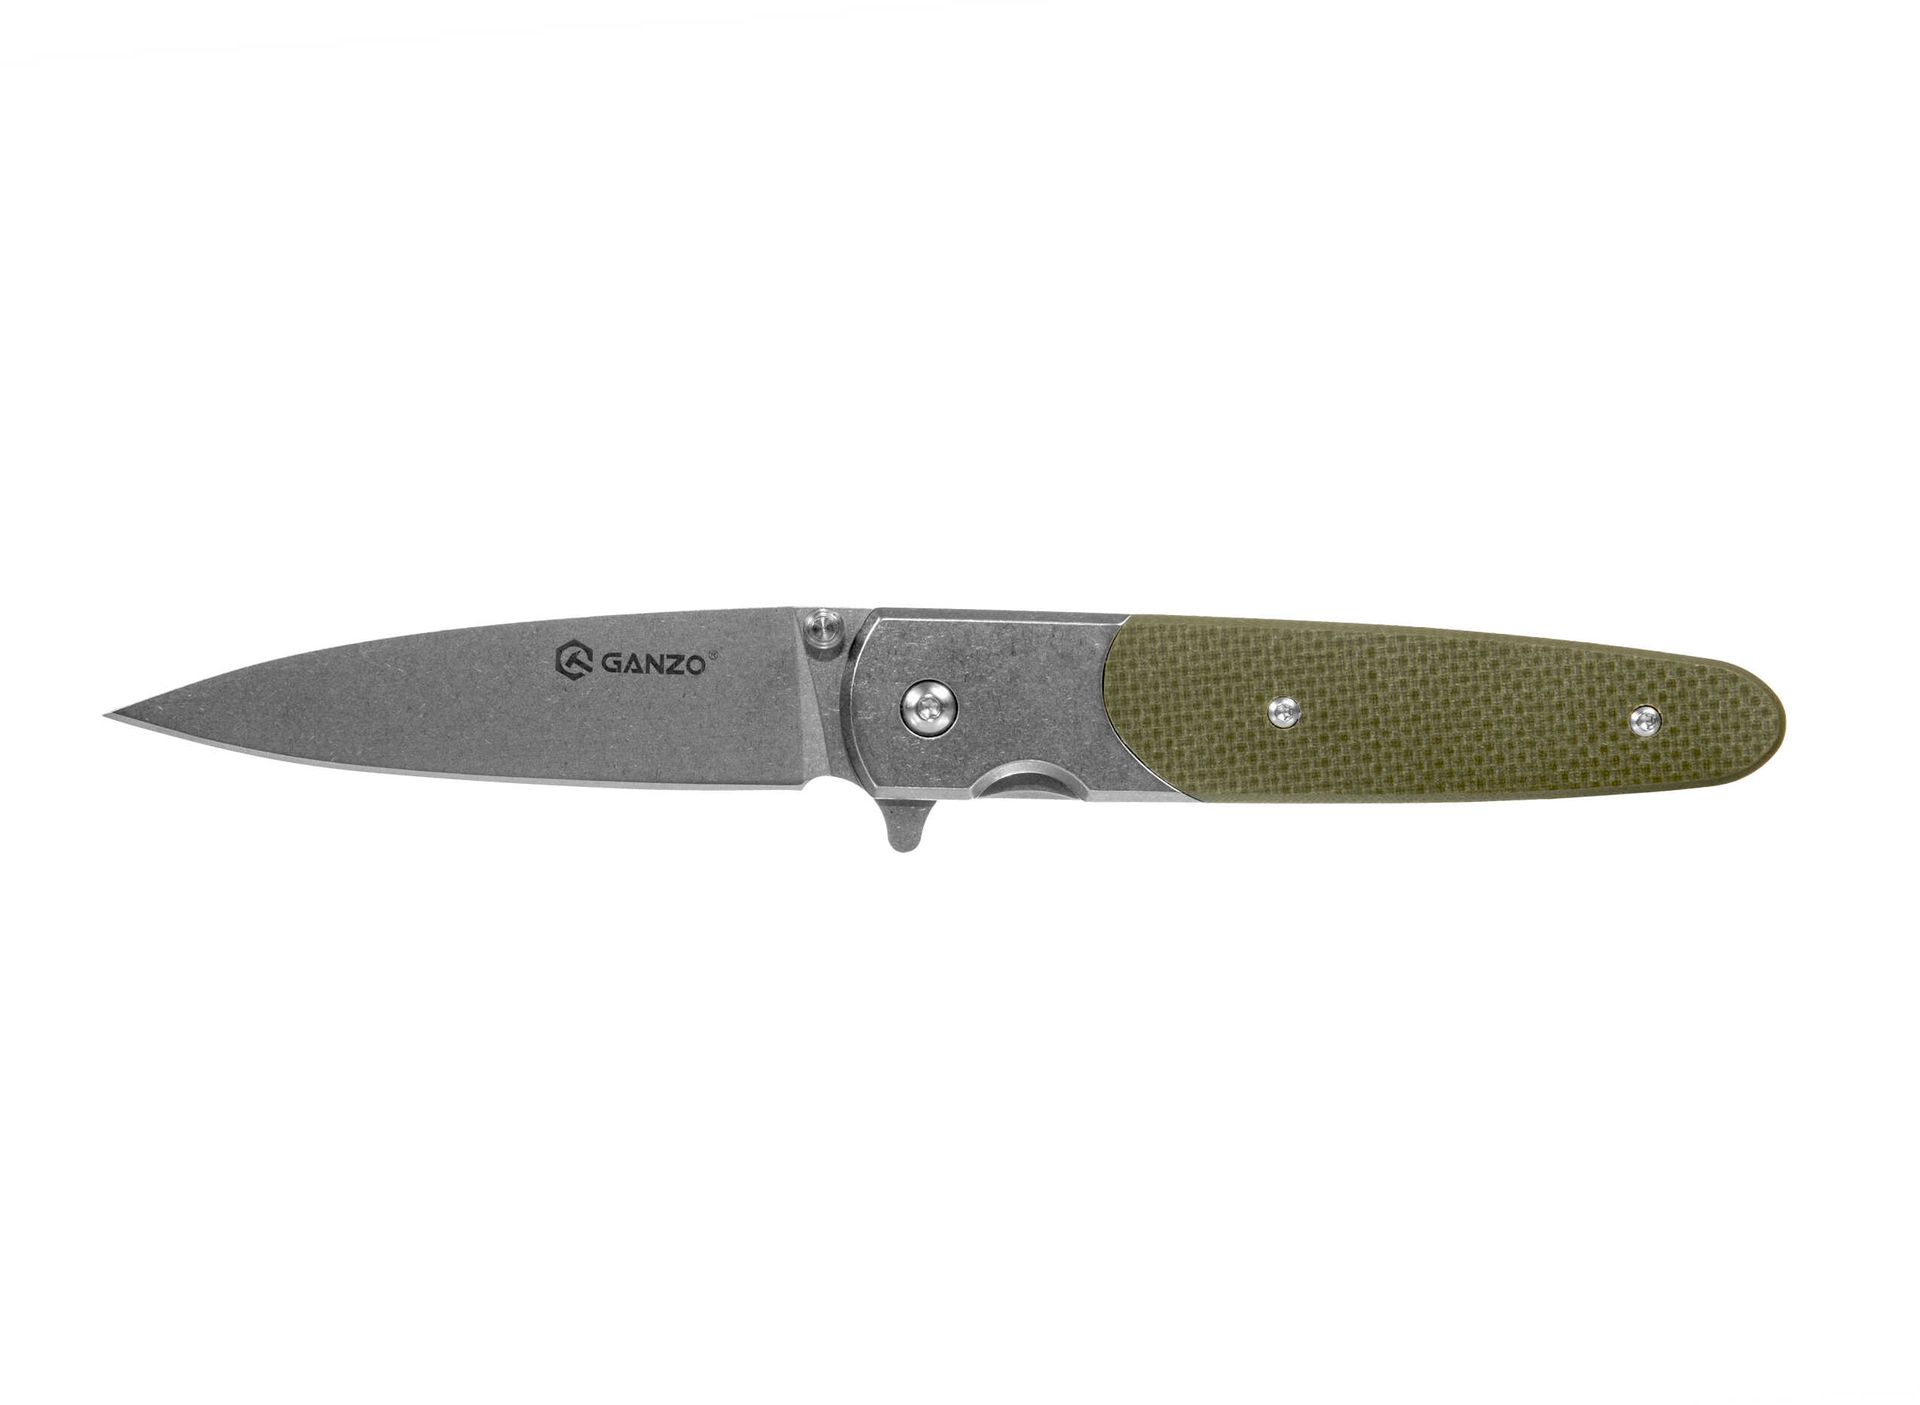 Ganzo GANZO nóż kieszonkowy nóż, szary, jeden rozmiar G743-2-GR